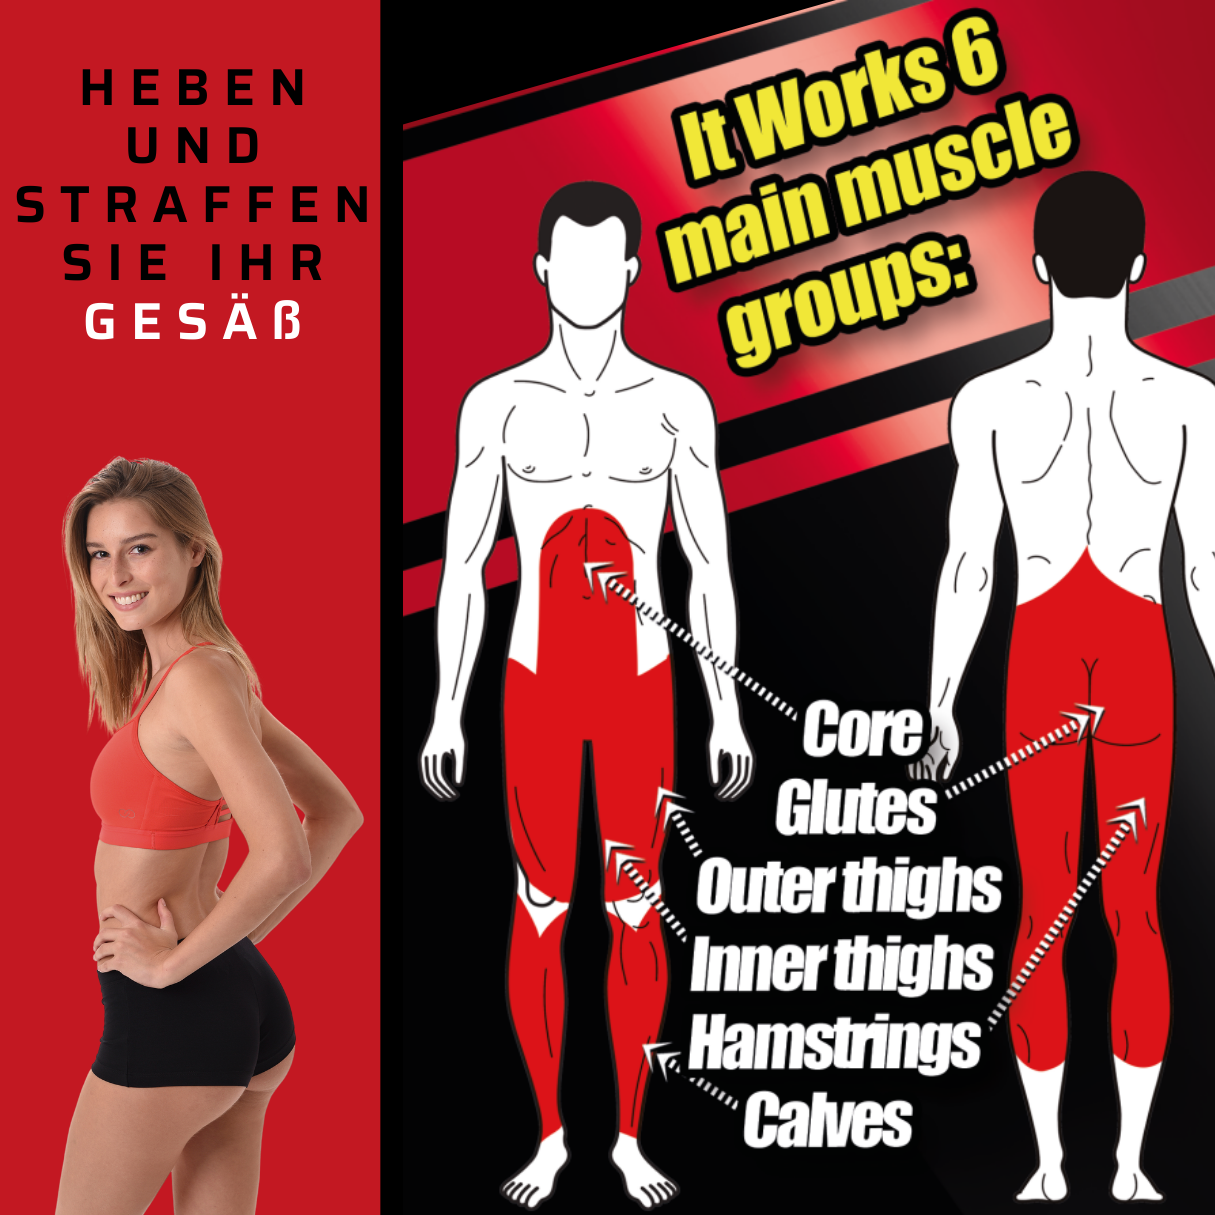 GYMFORM Squat Perfect Beinmuskeltraning, Kniebeugentrainer, Trainigsgerät, Gesäßmuskeltraining Hometrainer, - Kniebeugen grau/rot